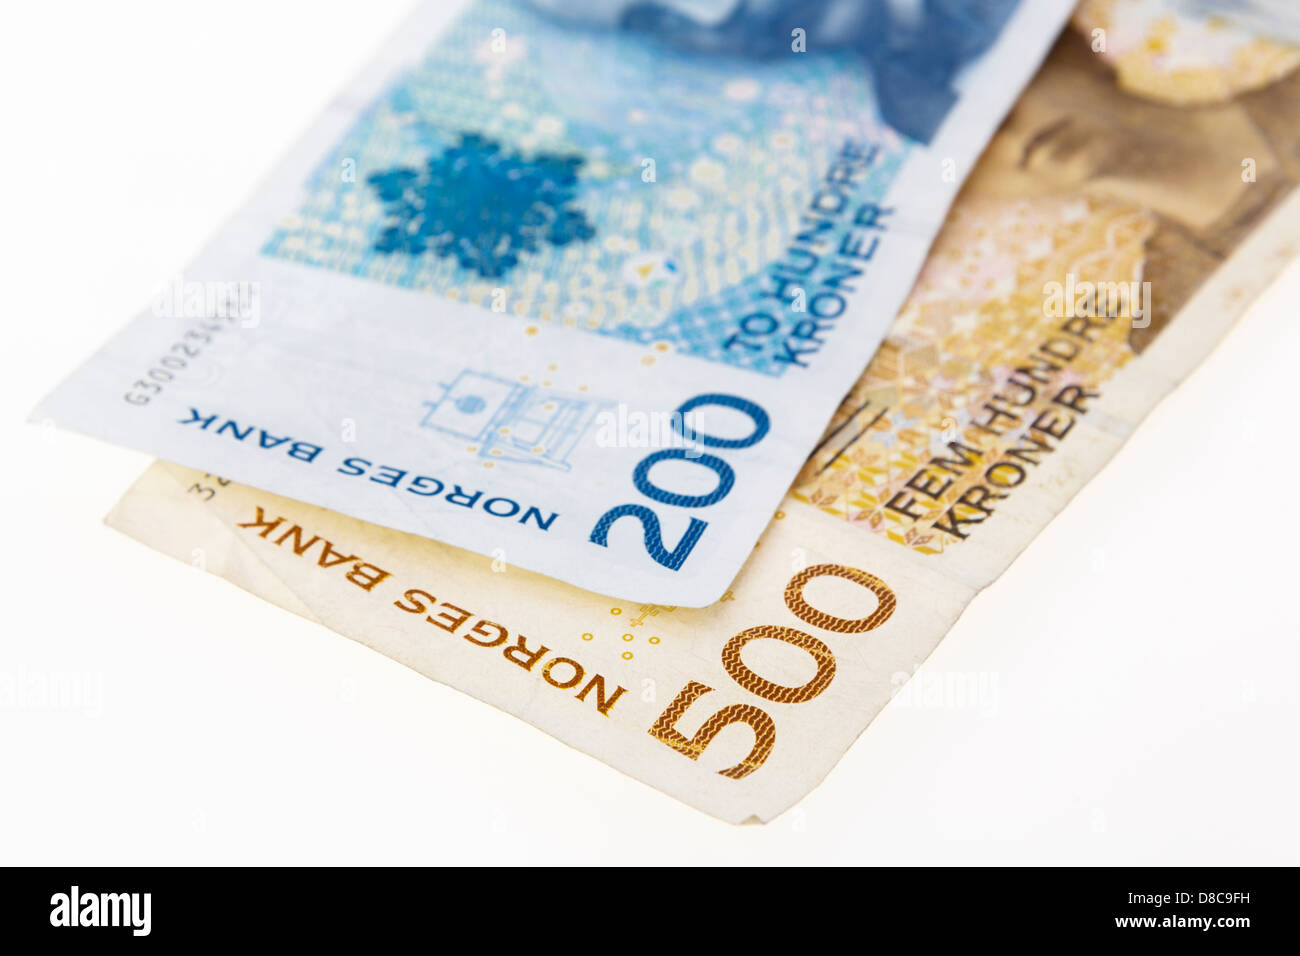 Deux Couronnes norvégiennes et 200 500 euros sur un arrière-plan uni, blanc à partir de la Norvège, Scandinavie, Europe Banque D'Images